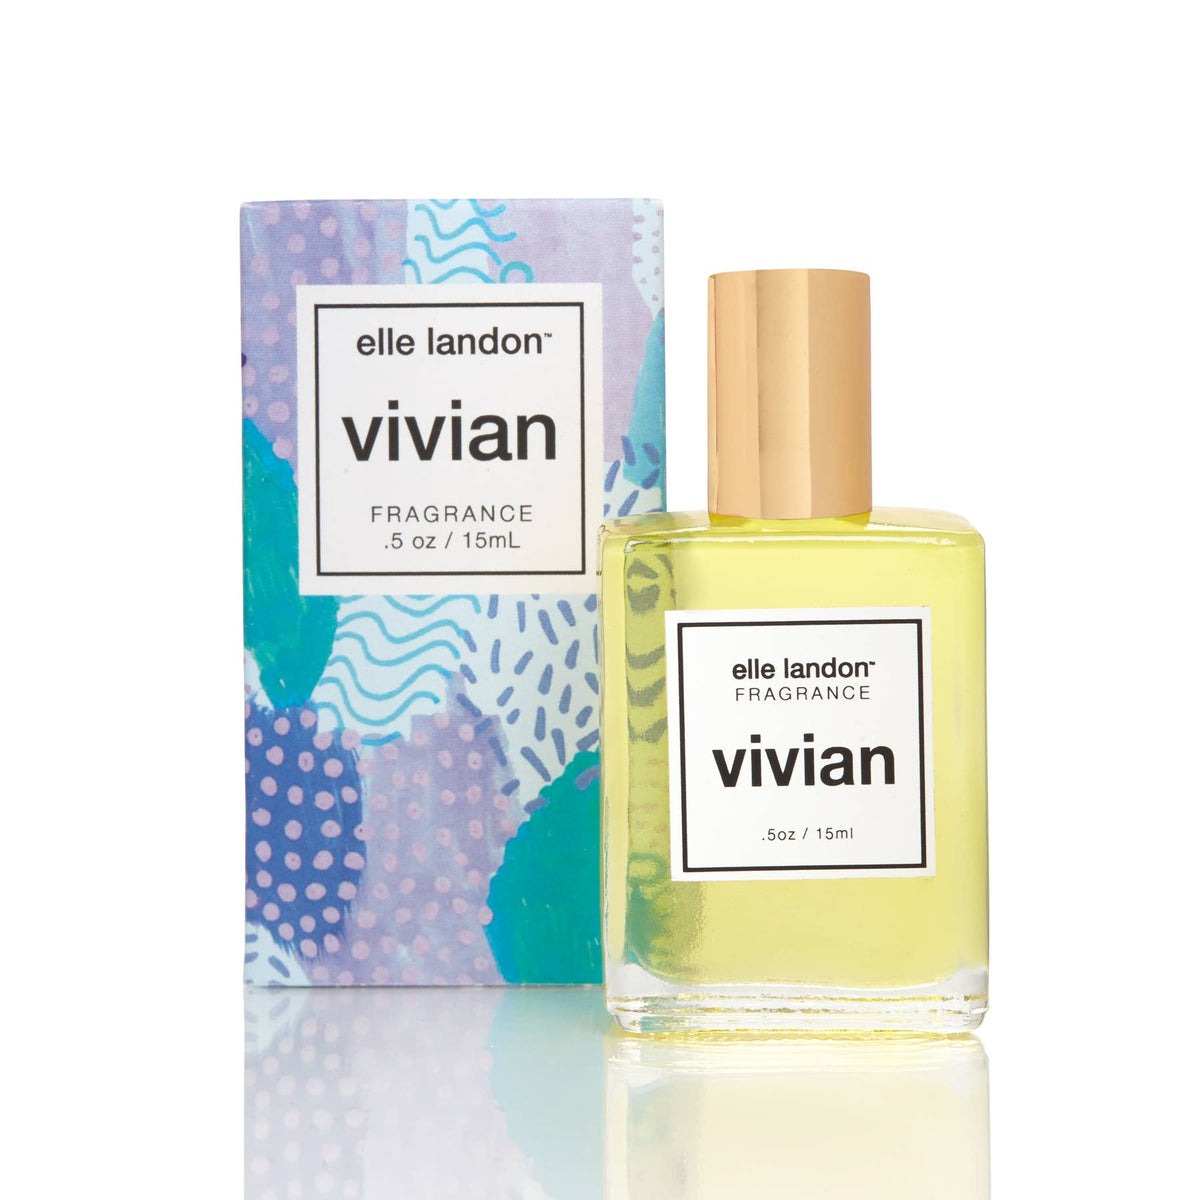 vivian fragrance